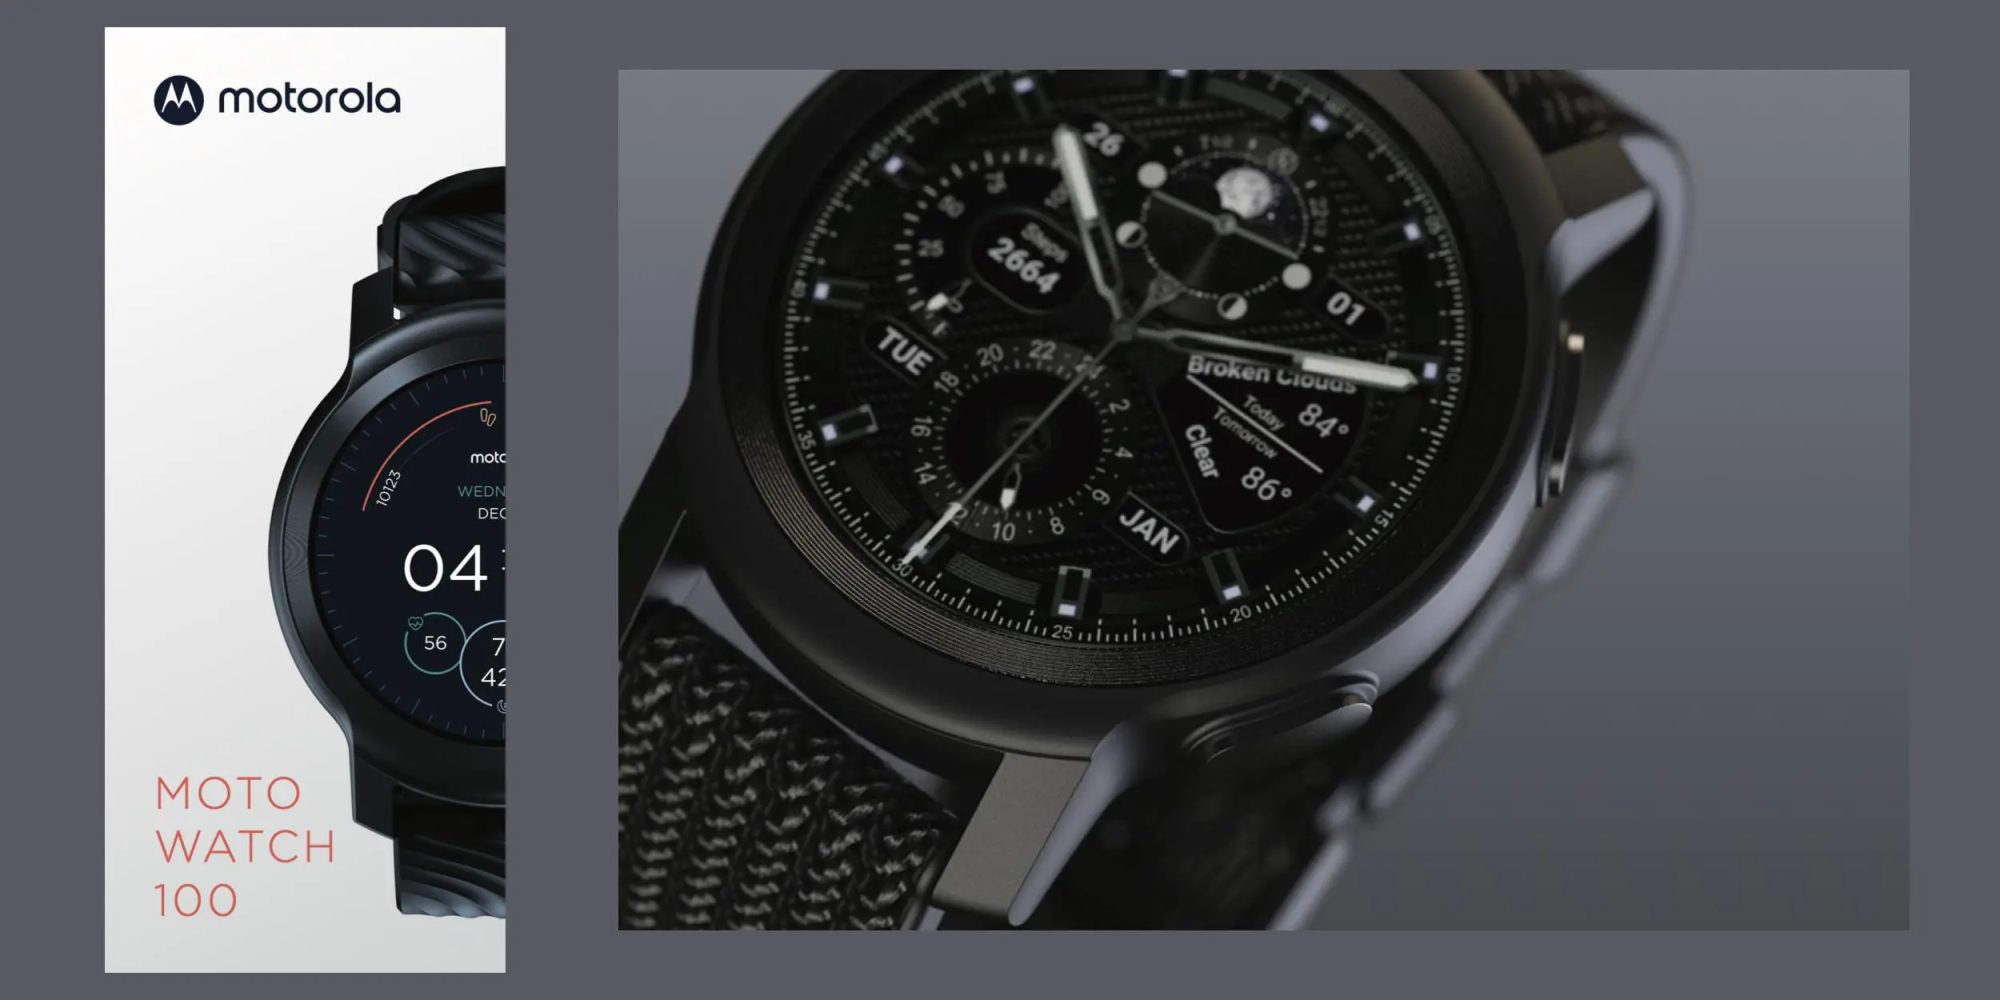 Die Moto Watch 100 wird der Name der nächsten Smartwatch sein, die unter der Marke Motorola auf den Markt kommt